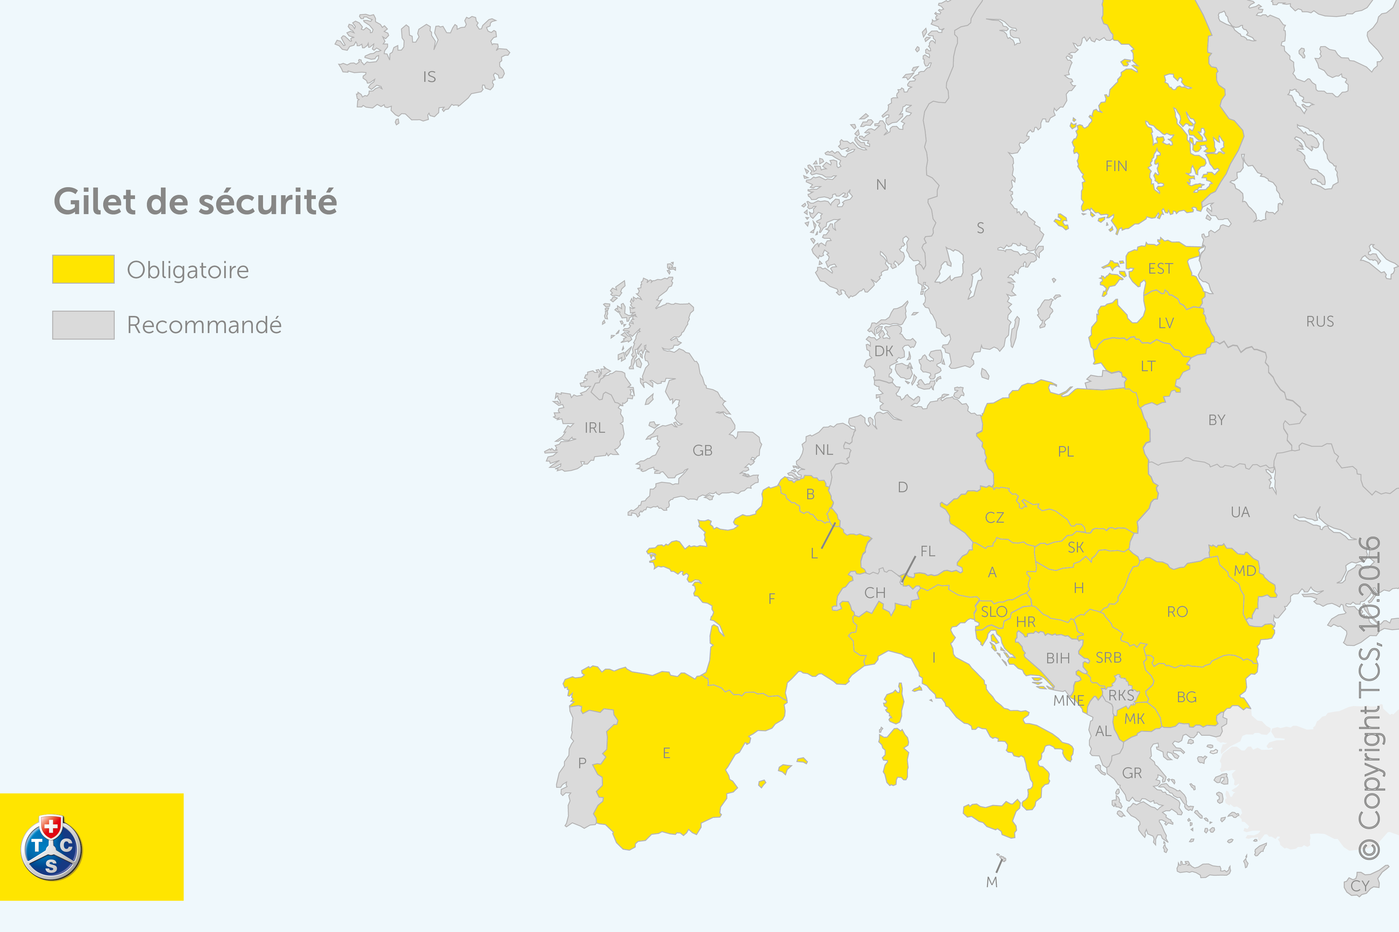 Vue d'ensemble de la loi concernant les gilets de sécurité en Europe